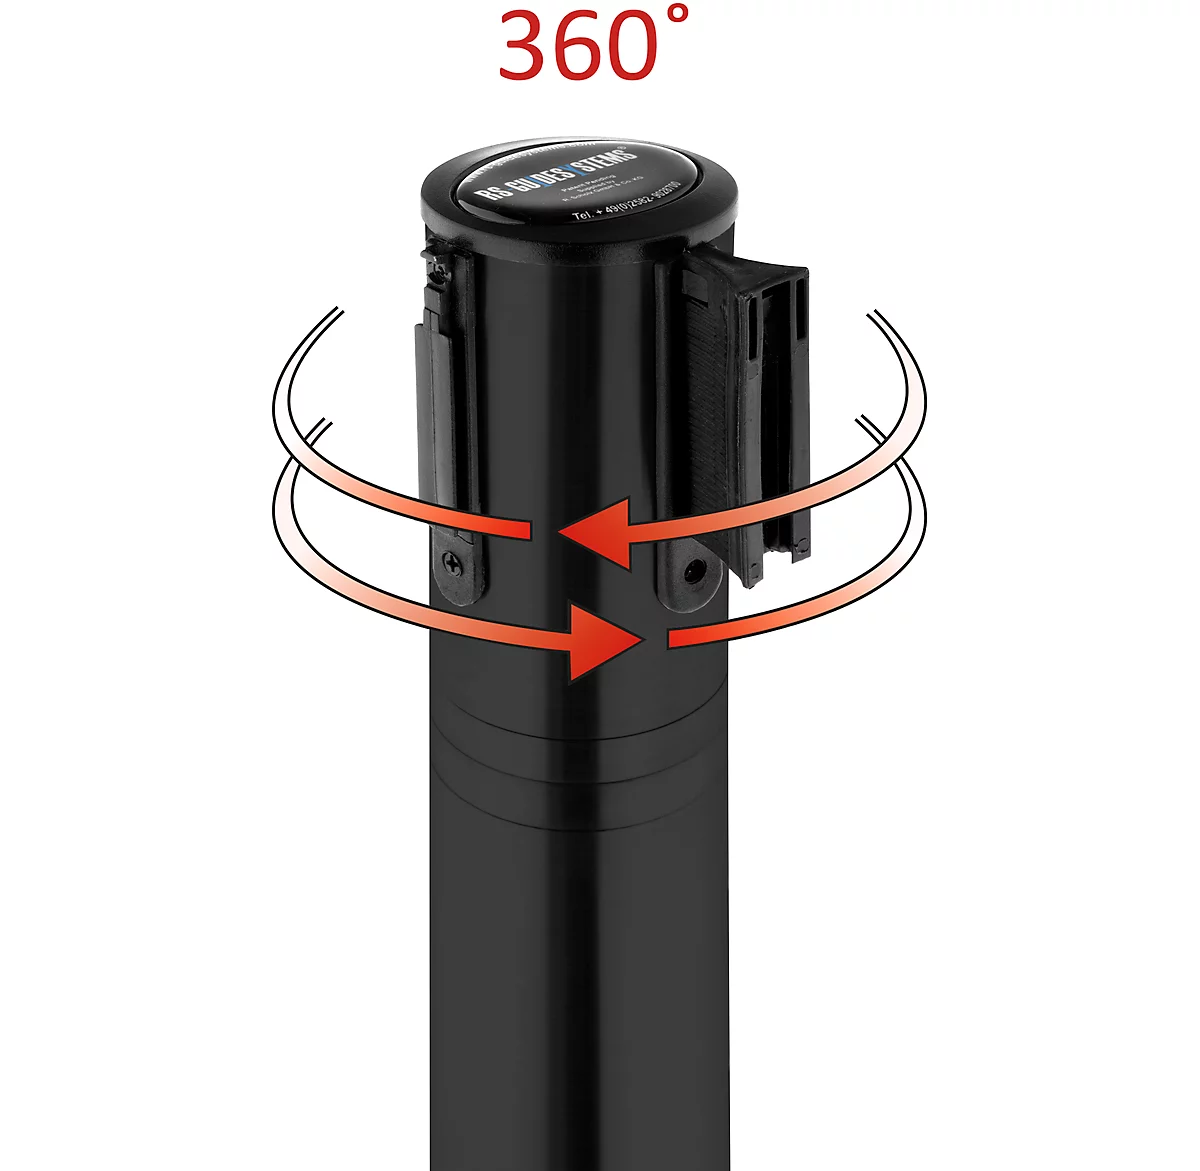 Absperrpfosten, Kopf um 360° drehbar, Gurt bis 2,3 m ausziehbar, Gurtkassette & Bremse, L 1000 mm, Metall, Gurt schwarz-weiss